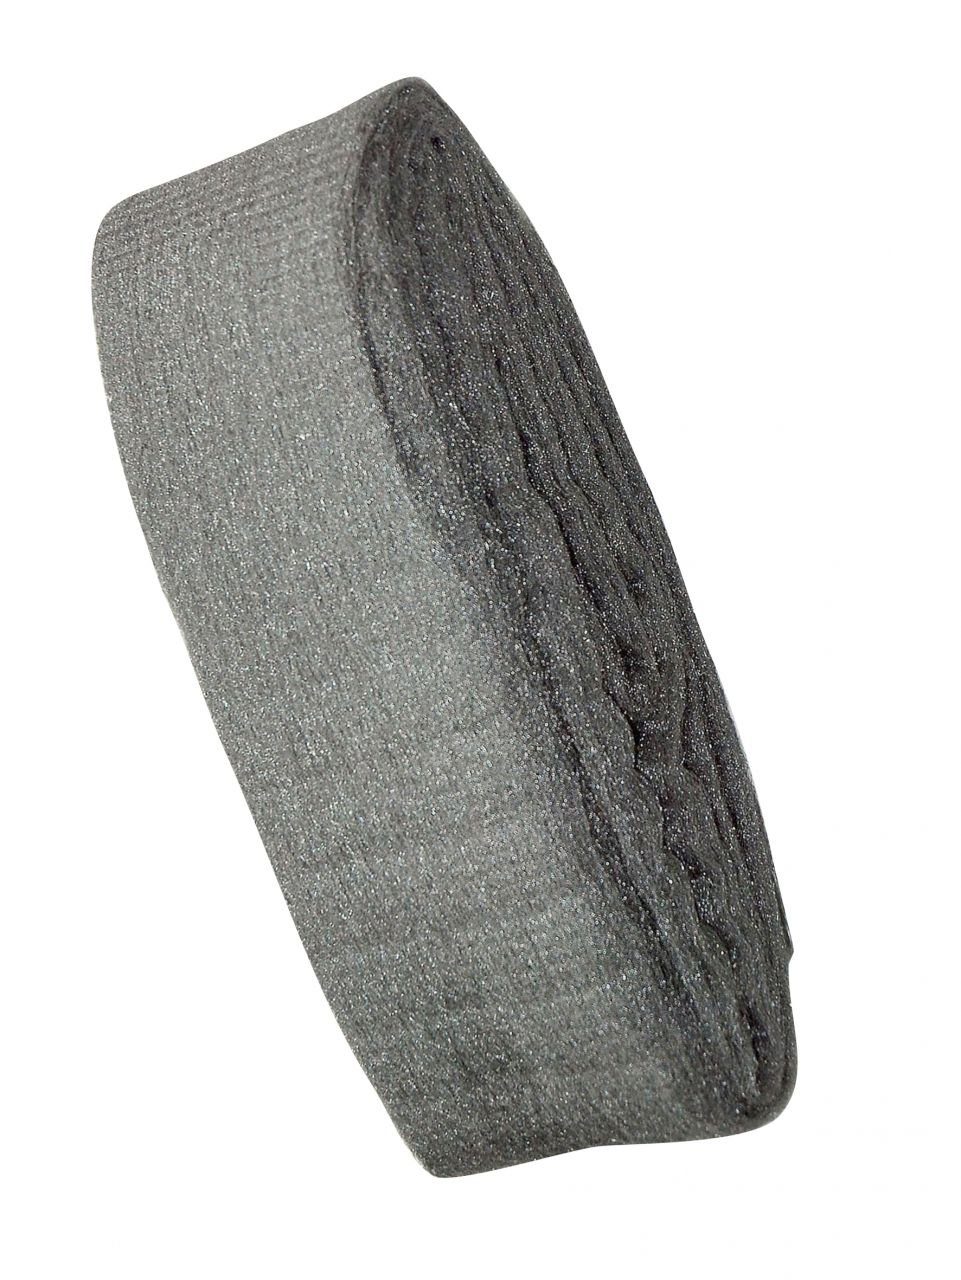 Nespoli Schleifpapier Nespoli Stahlwolle Feinheitsgrad 000, 200 g